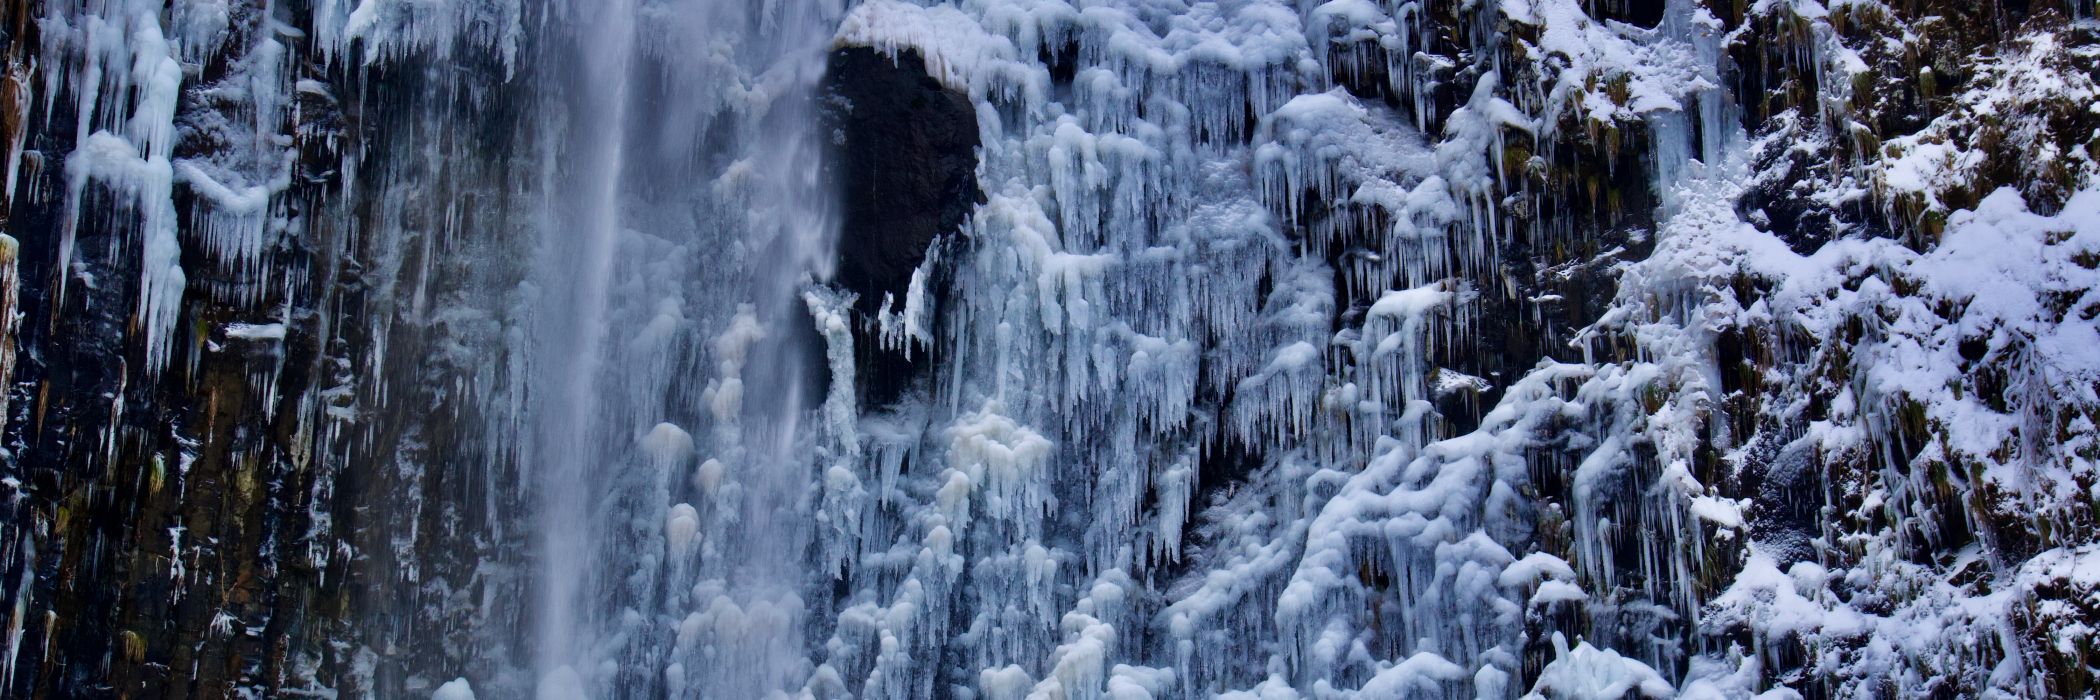 玉簾の滝 氷瀑